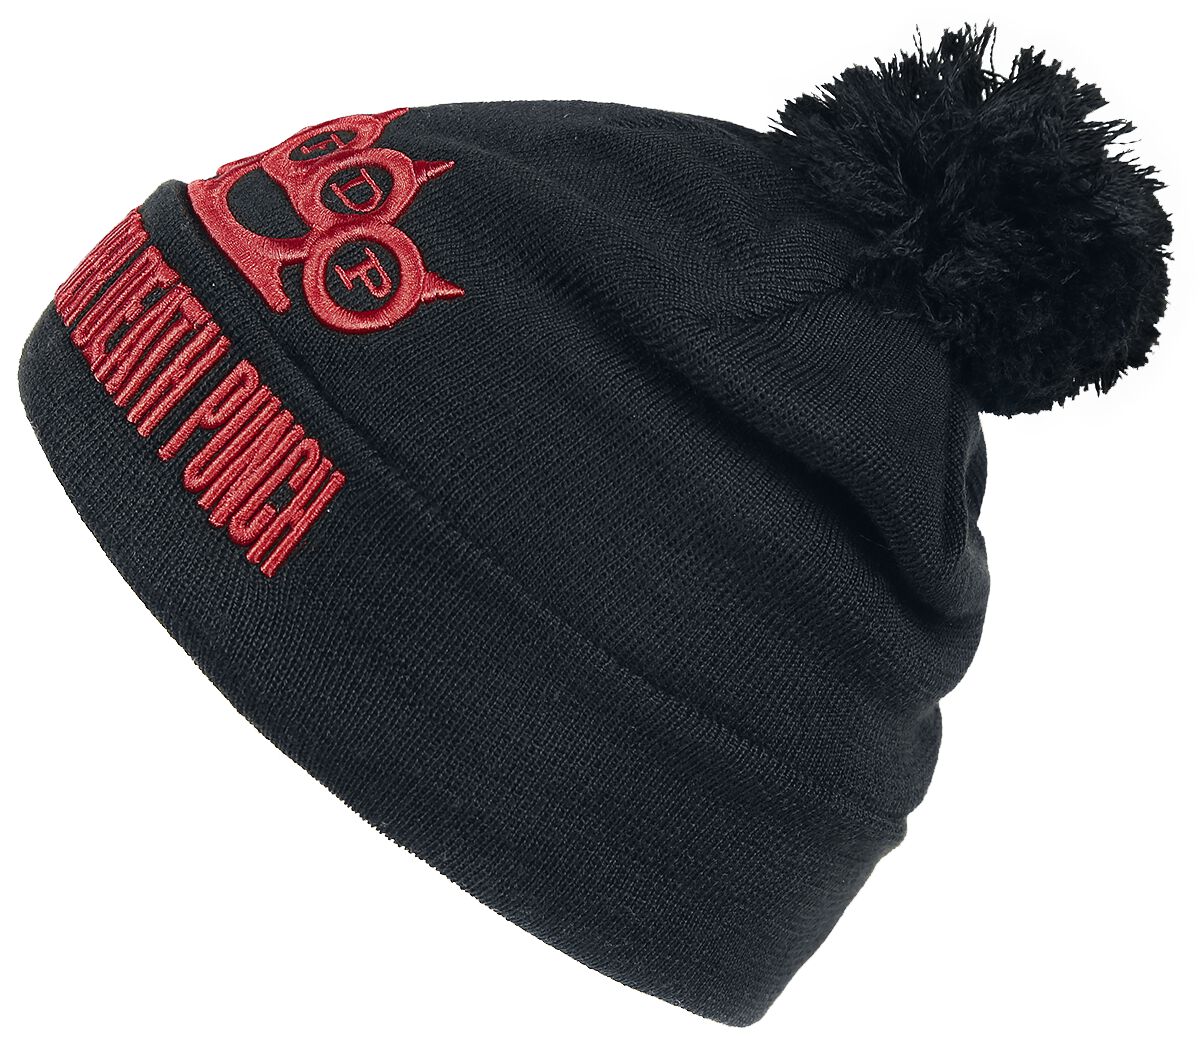 Five Finger Death Punch - Logo Beanie - Mütze - schwarz - EMP Exklusiv!